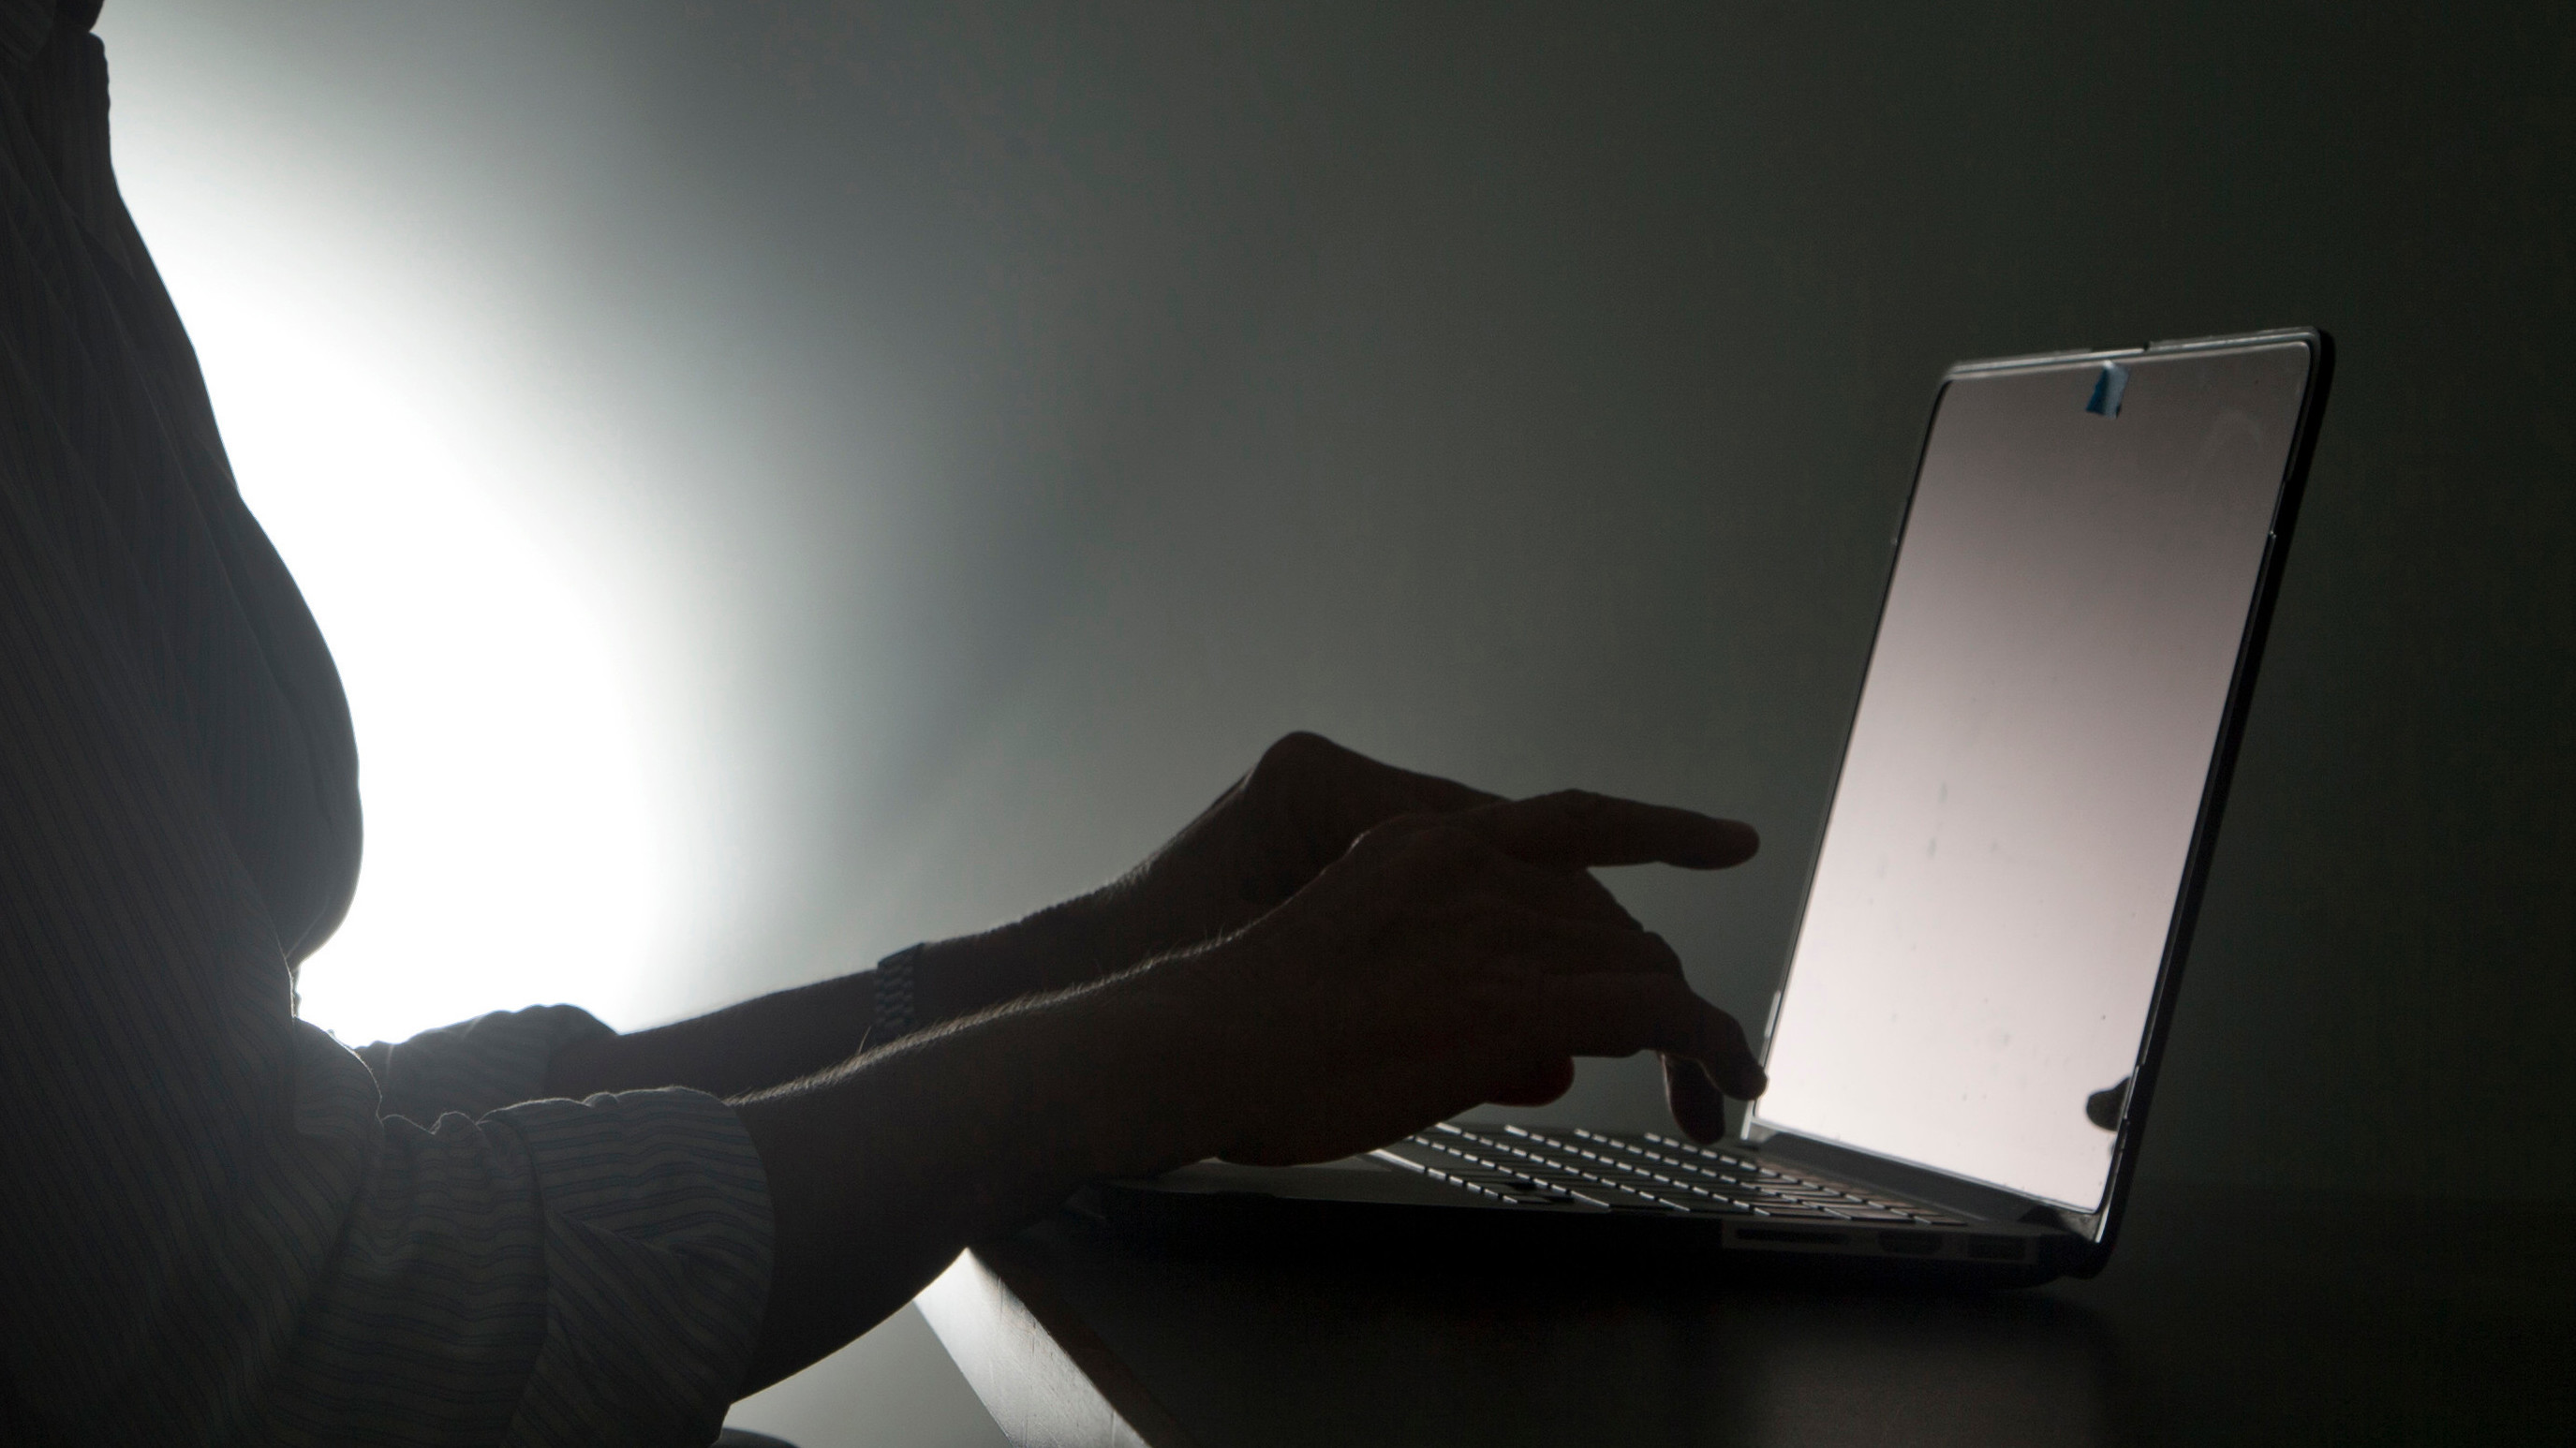 Pessoa digita em um laptop em um ambiente mal iluminado